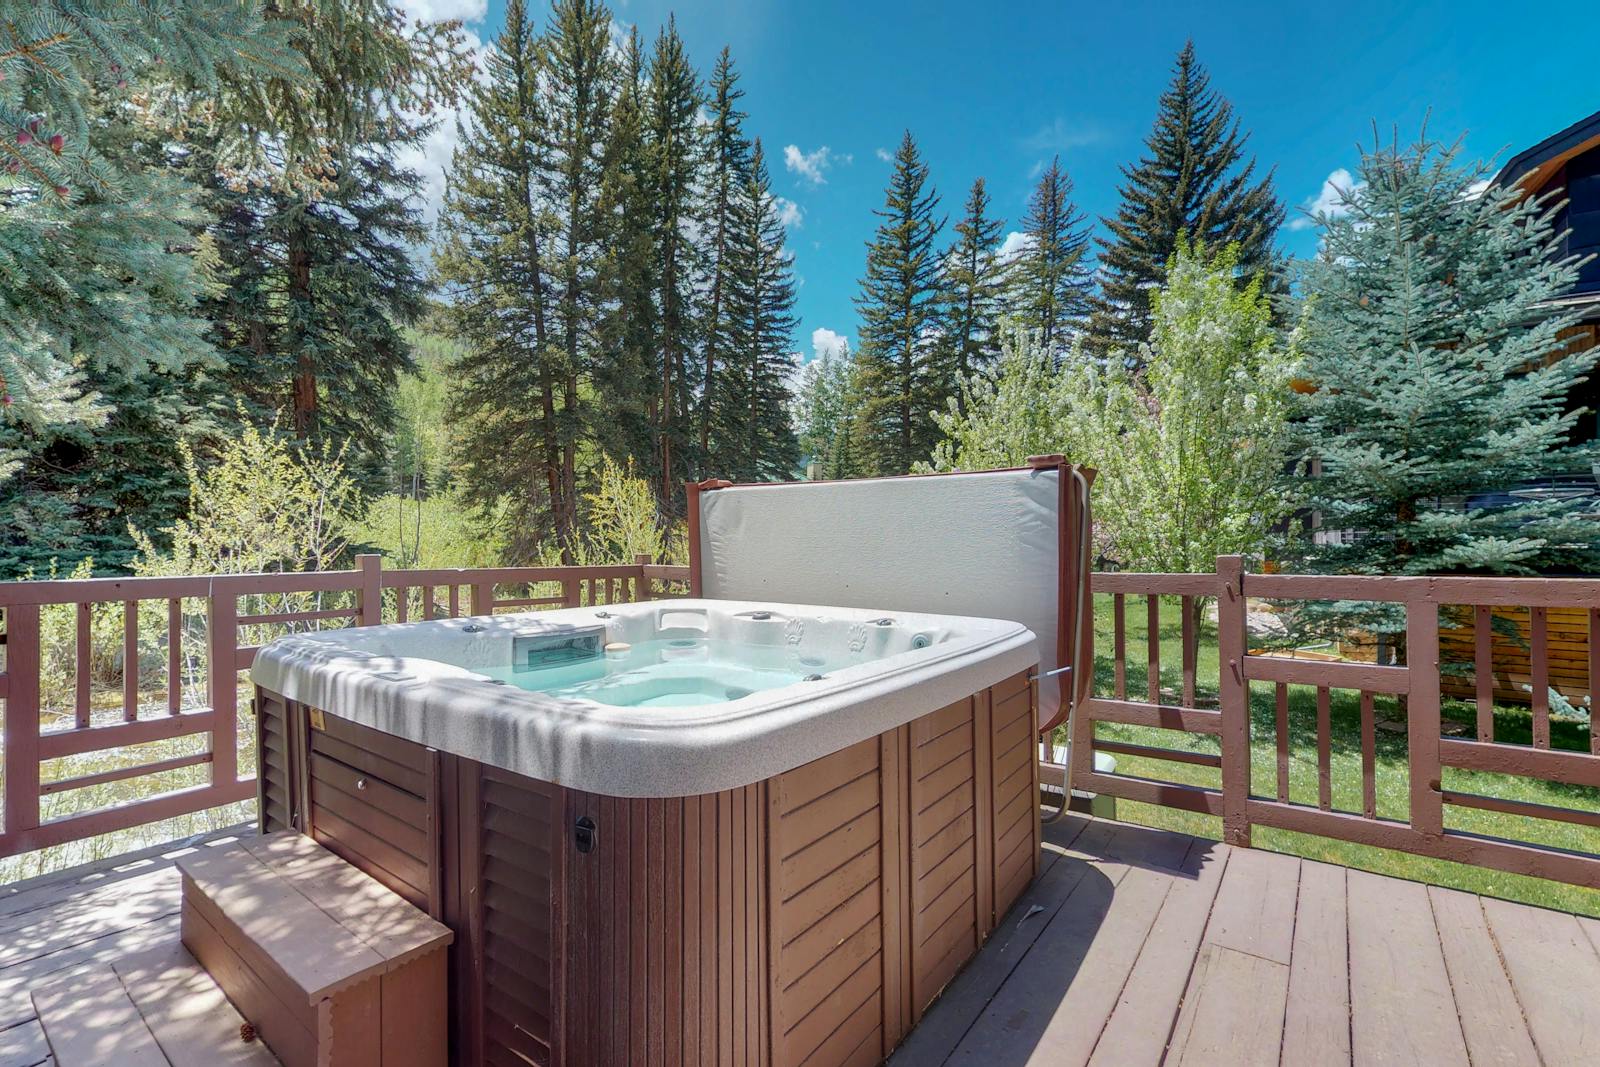 8 Breathtaking Colorado Vacation Cabin Rentals With Hot Tubs